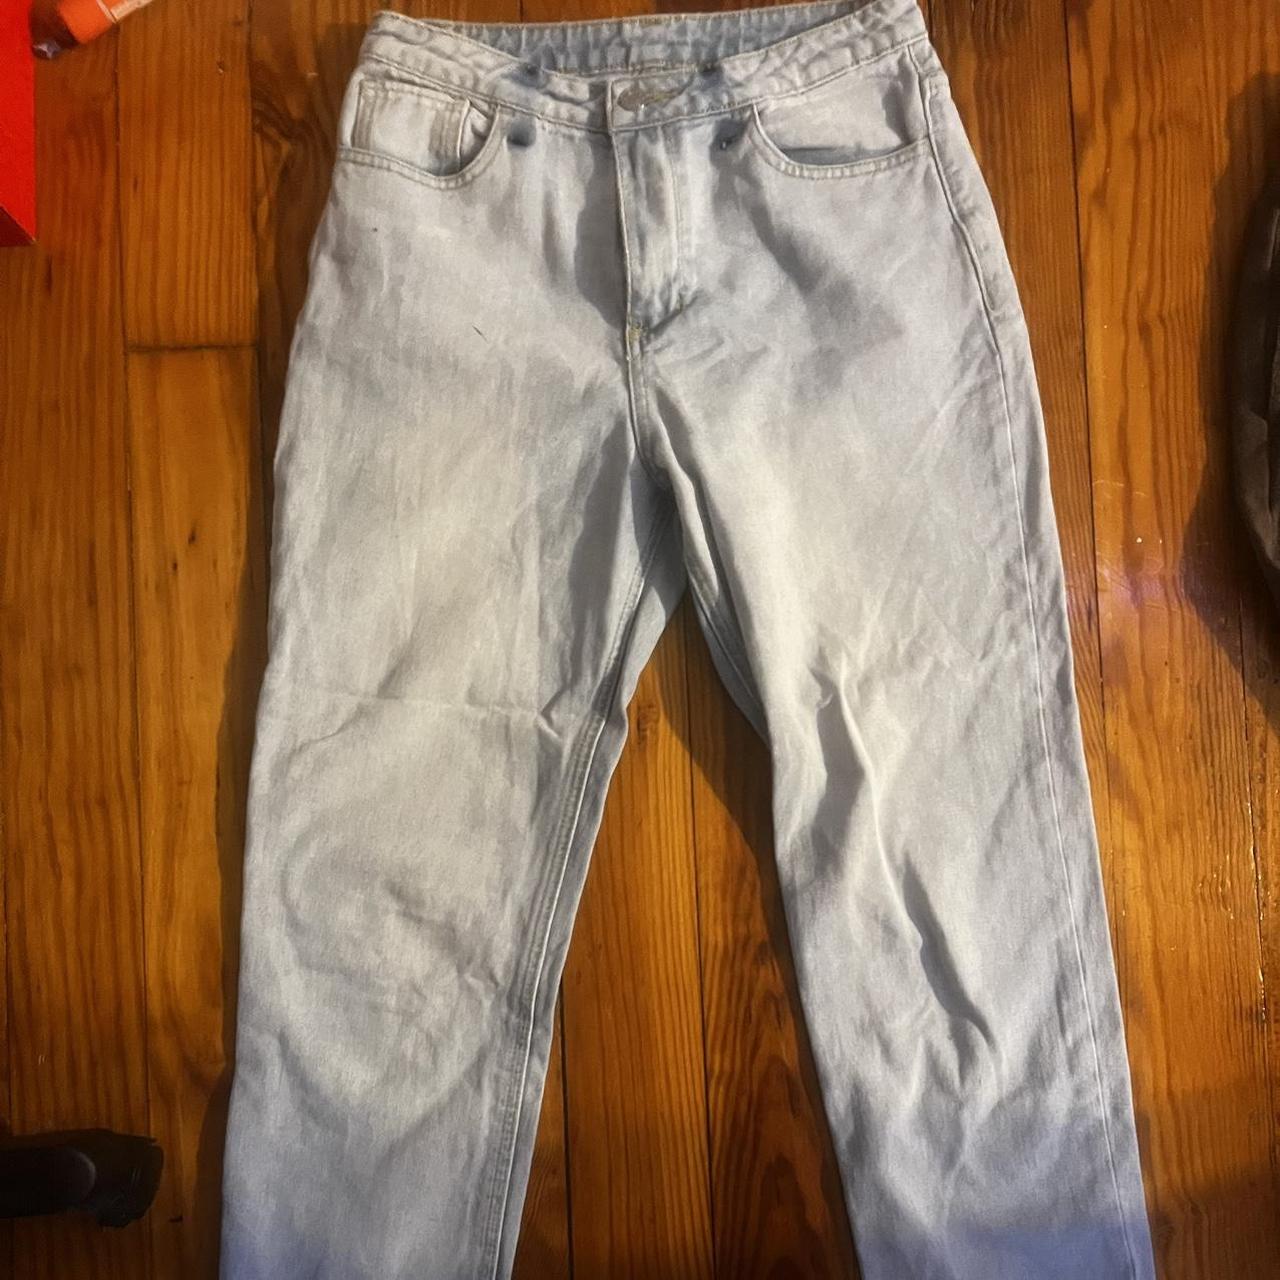 Light wash jeans size:30/29 - Depop